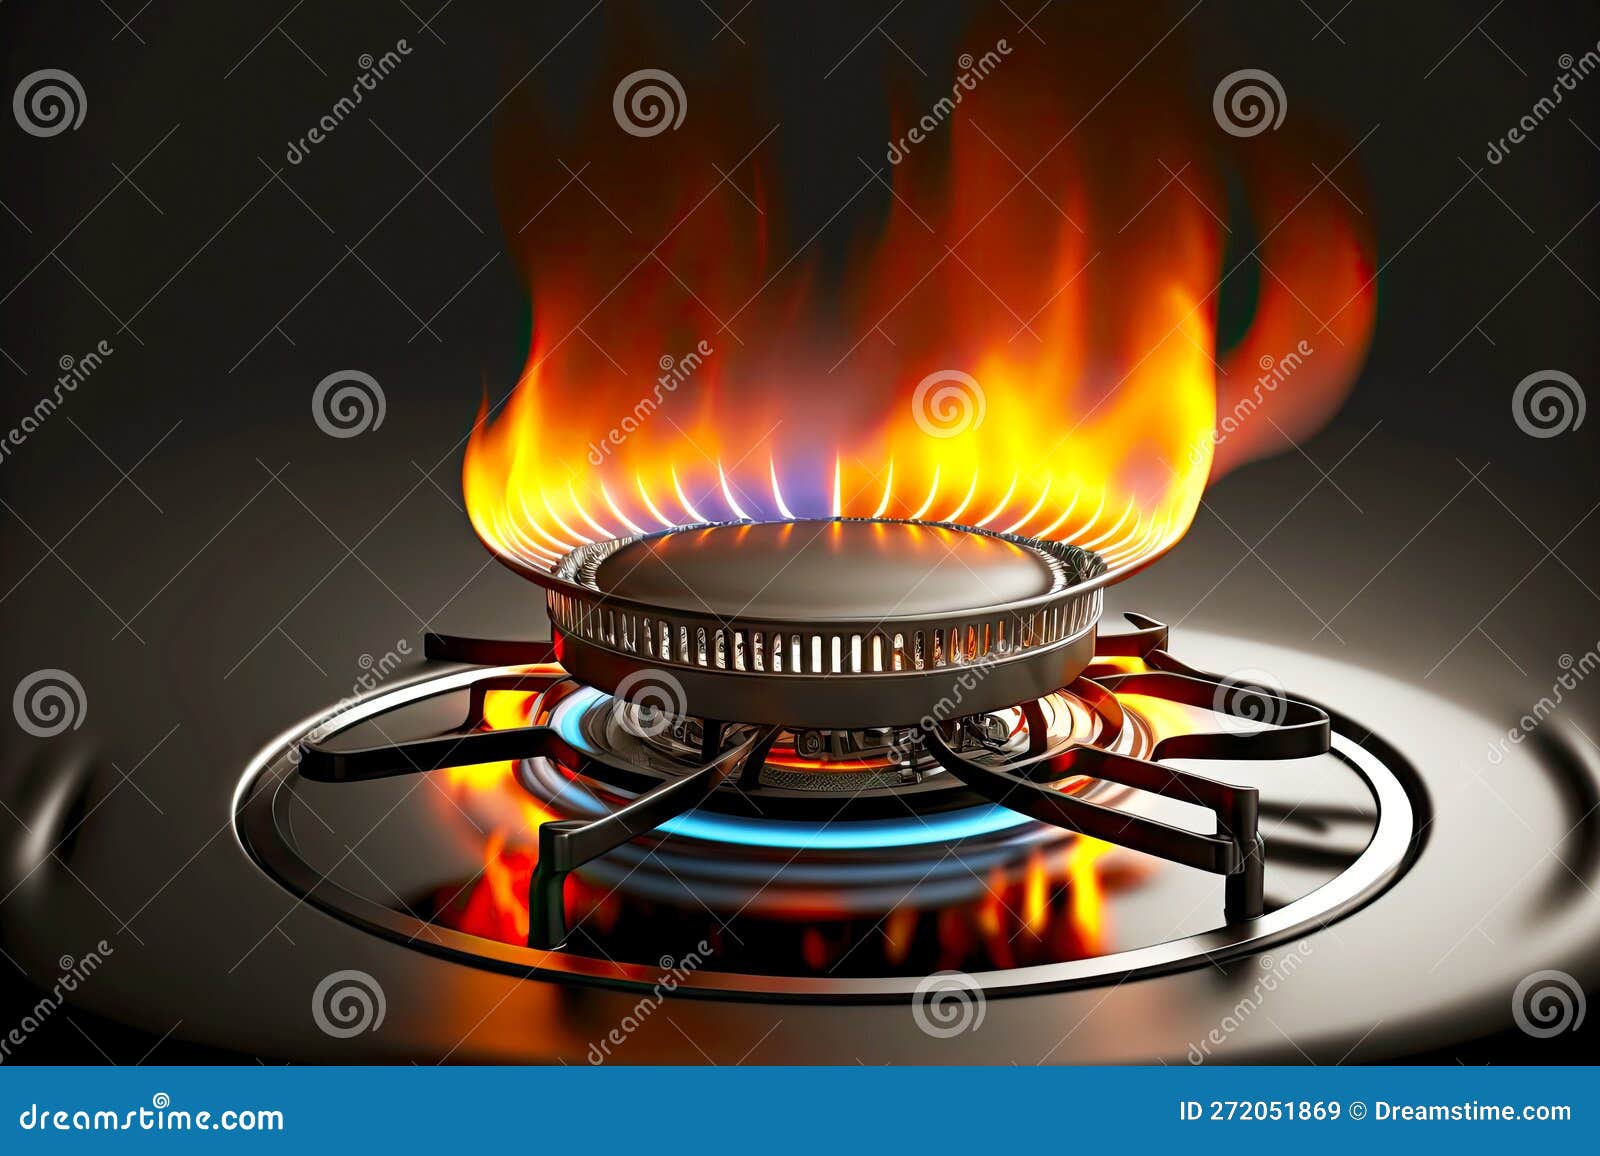 https://thumbs.dreamstime.com/z/cuisini%C3%A8re-%C3%A0-gaz-avec-br%C3%BBleur-flamme-de-combustion-cr%C3%A9%C3%A9e-air-g%C3%A9n%C3%A9ratif-272051869.jpg